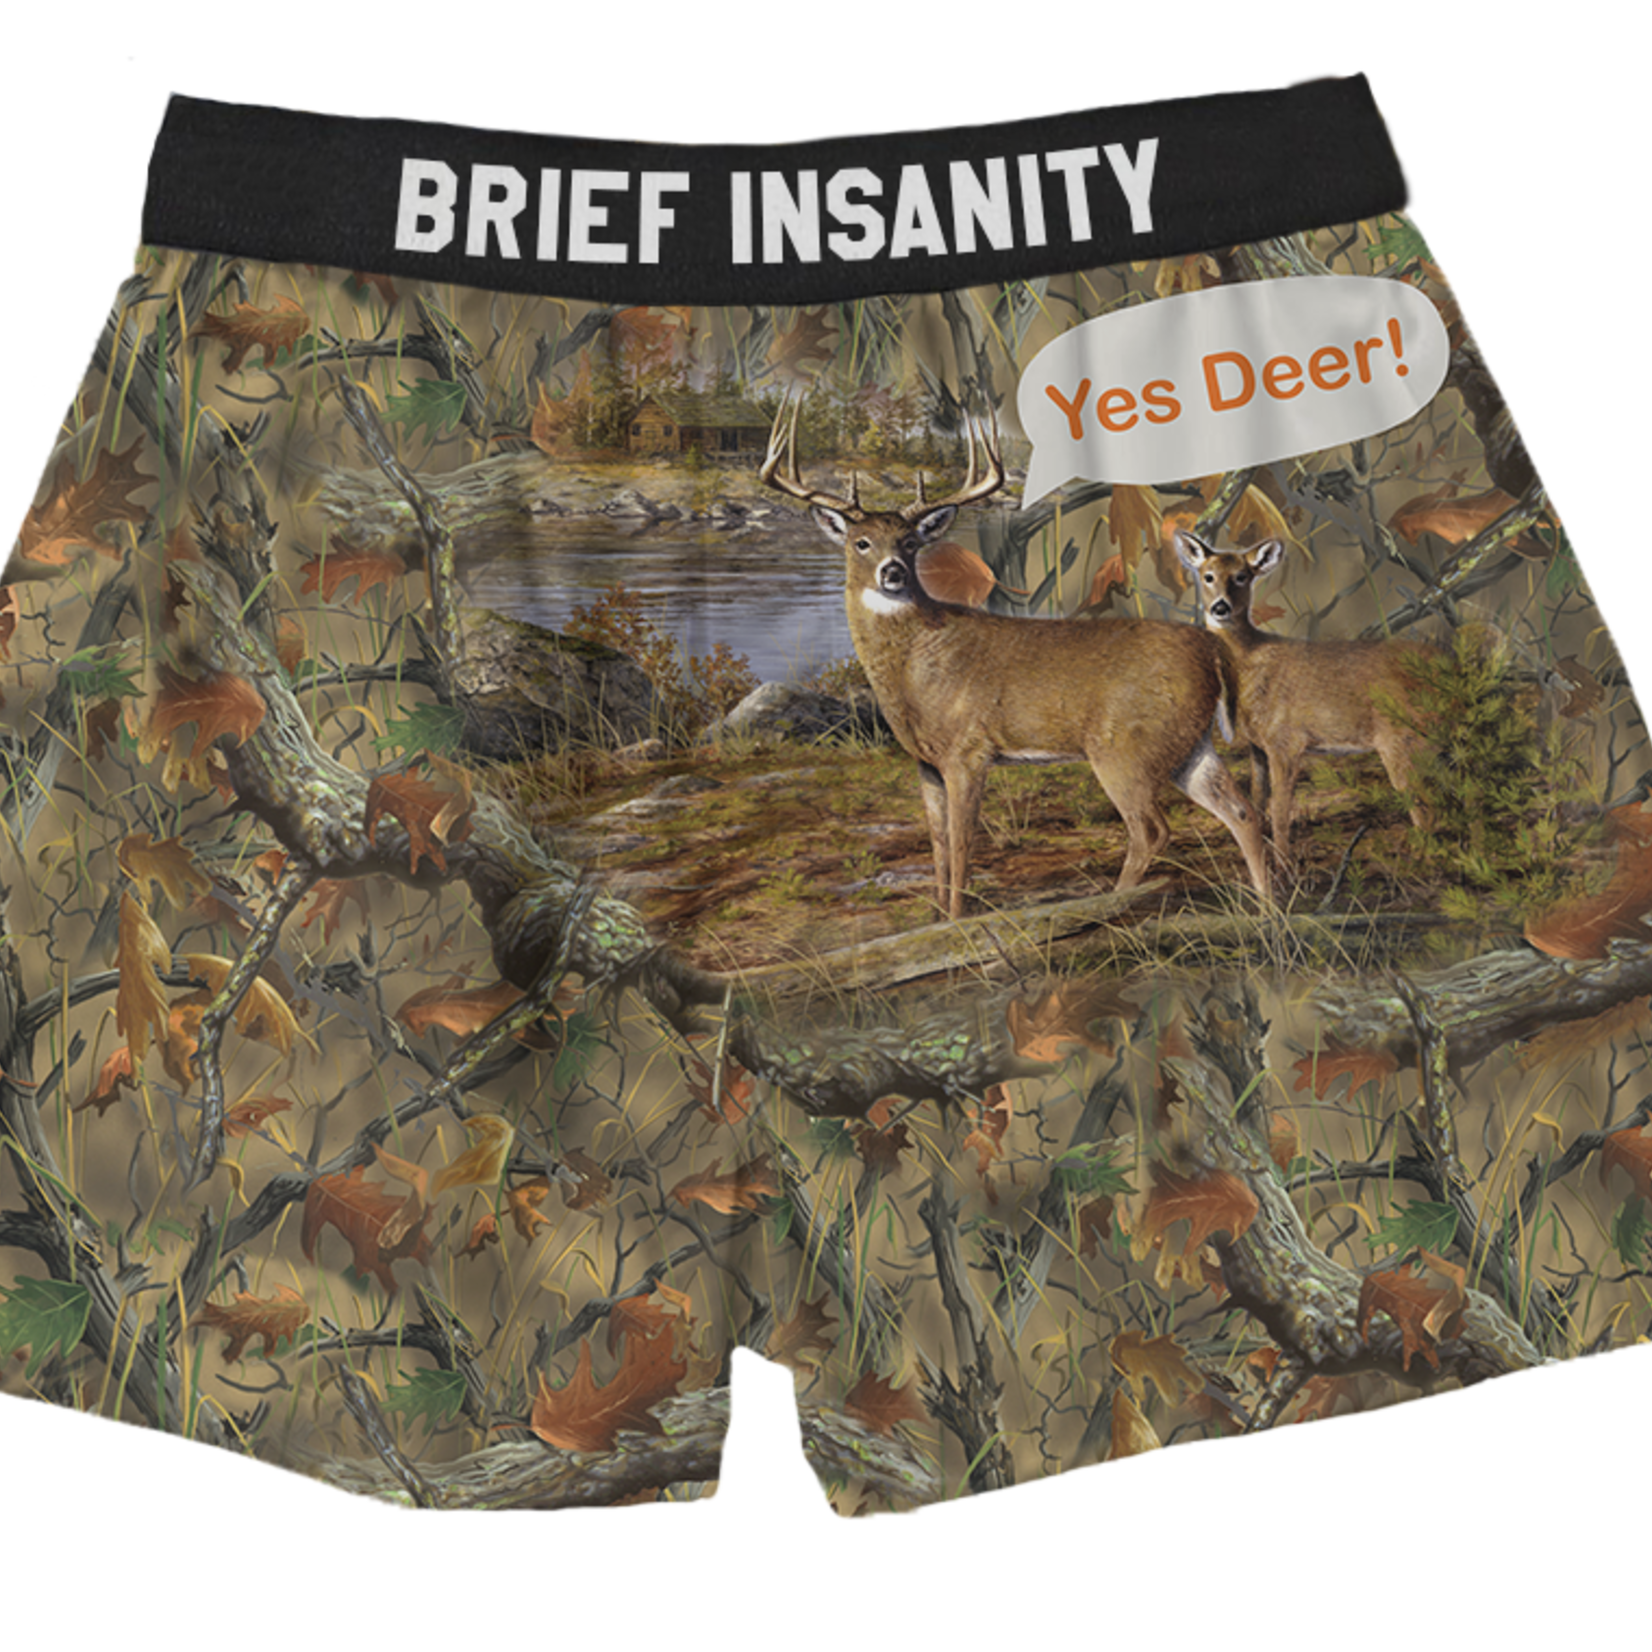 Brief Insanity Yes Deer Boxers